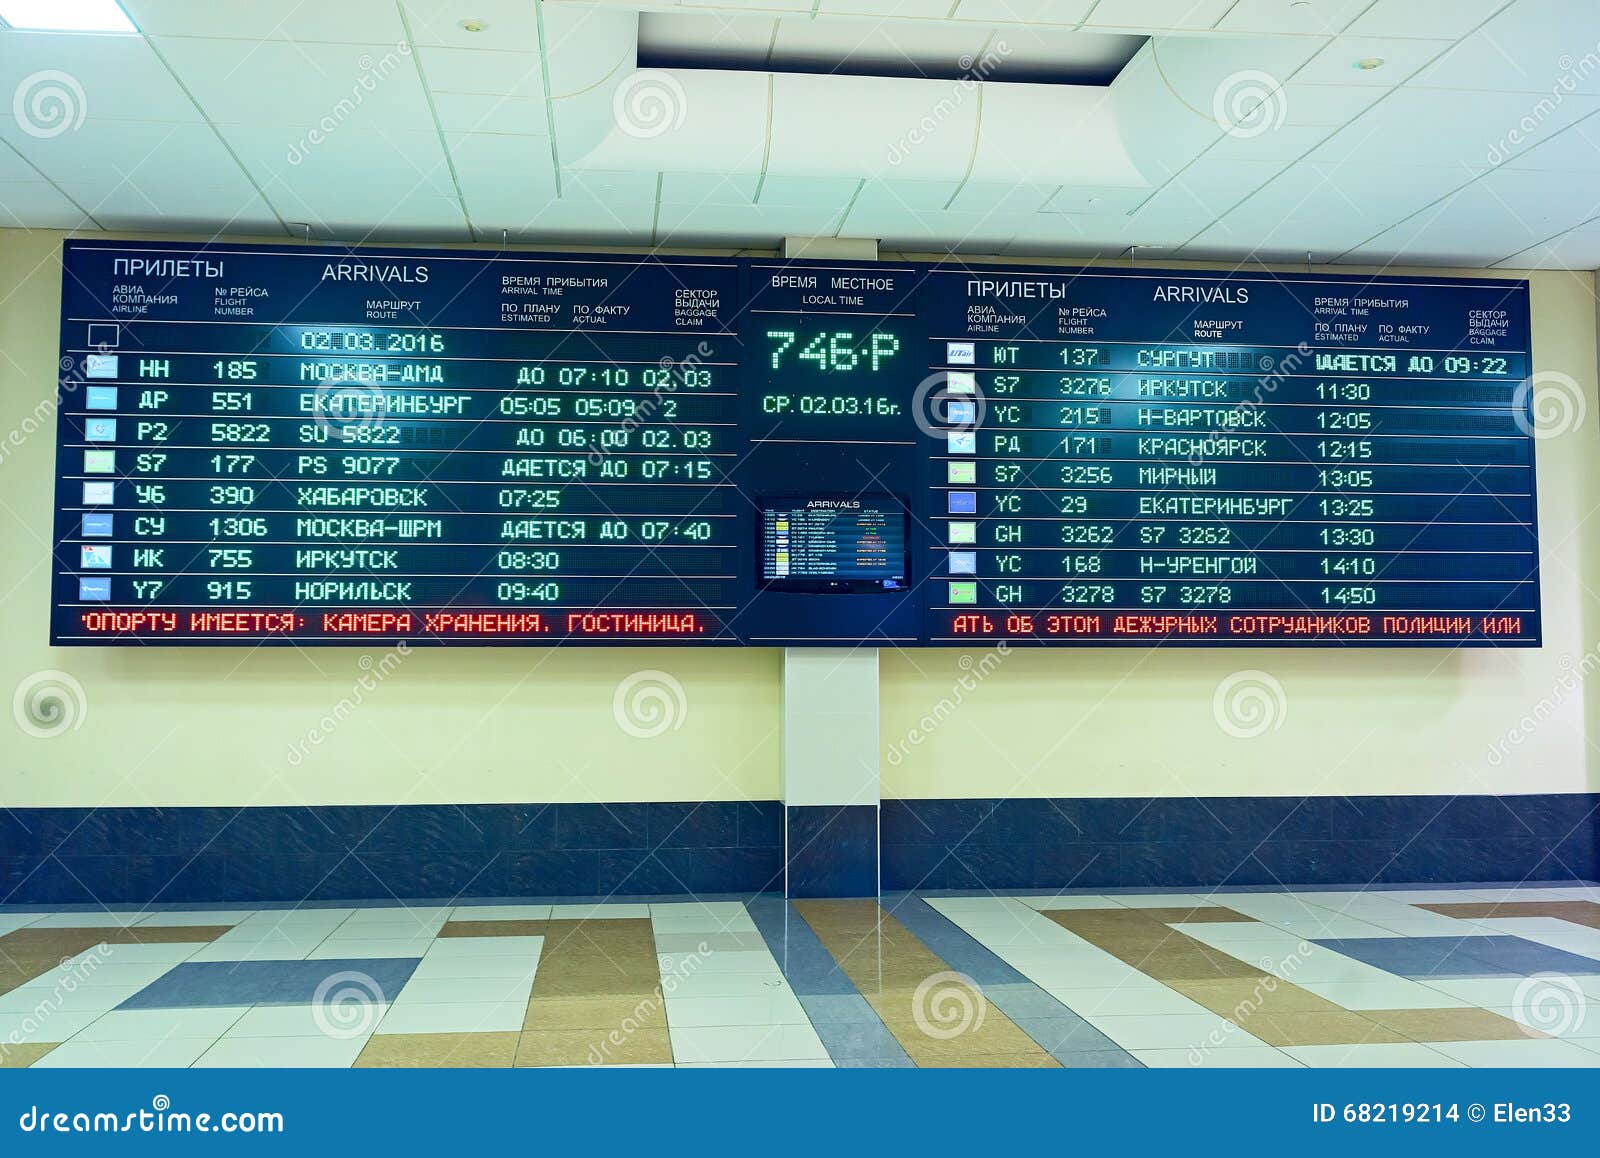 Новосибирск жд вокзал автобус купить билеты. Аэропорт Новосибирск расписание. Автобус вокзал аэропорт Новосибирск. Толмачёво аэропорт расписание. График аэропорту Толмачево.